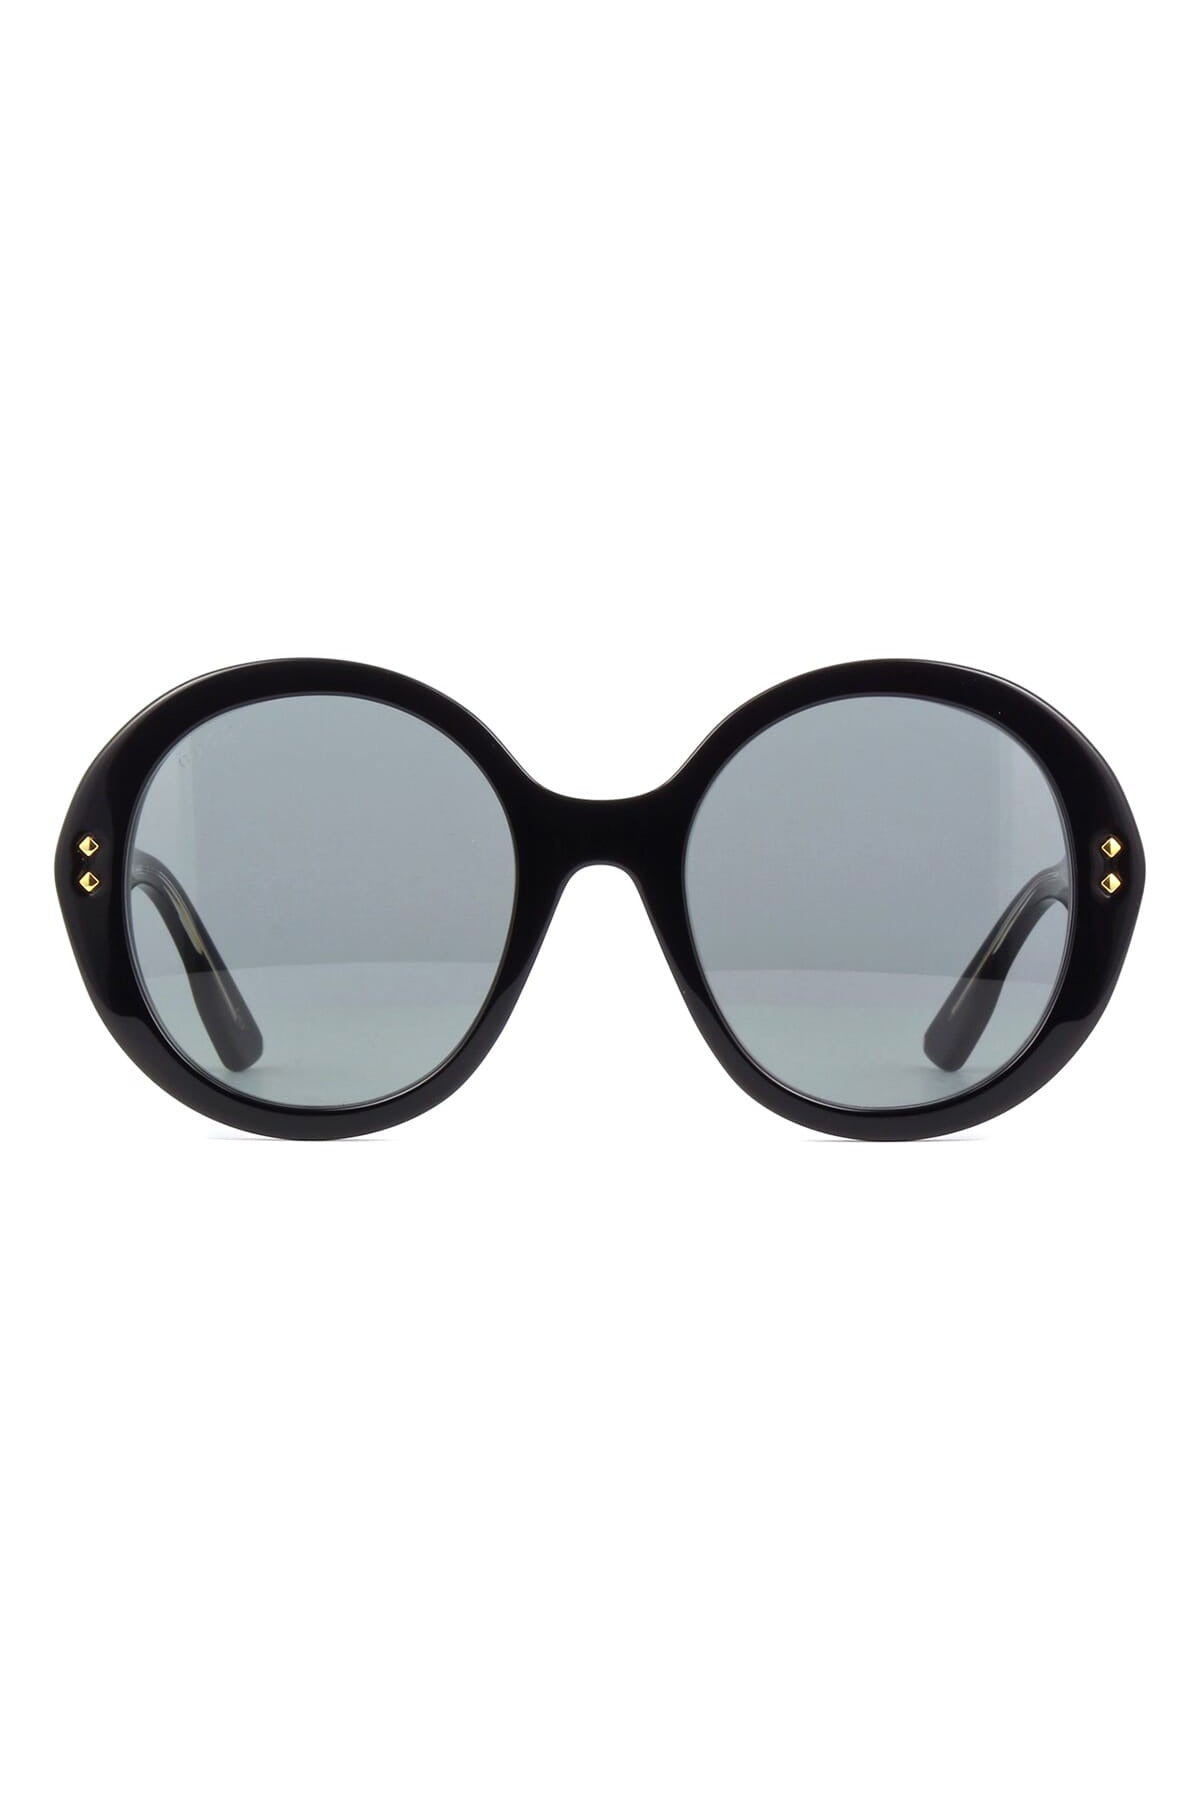 GUCCI-Round Sunglasses-BLACK